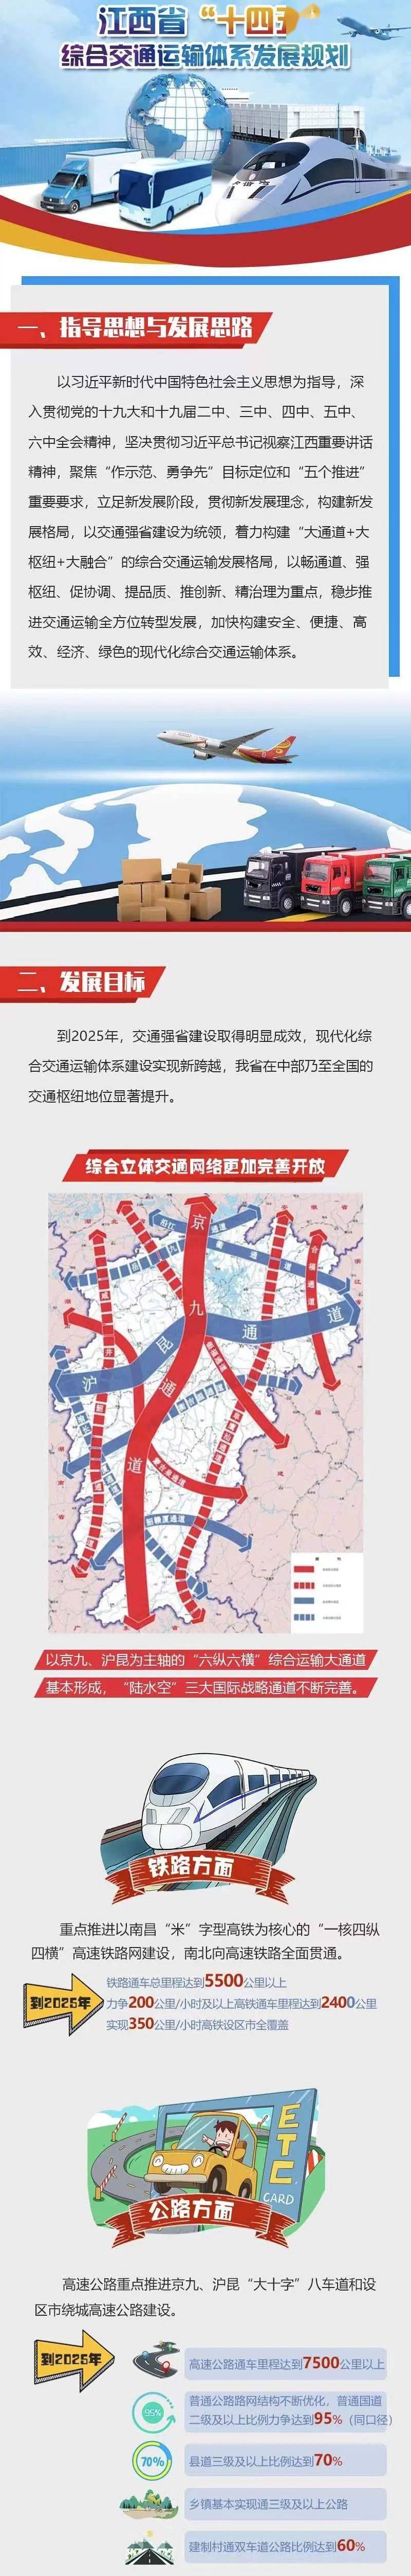 一图读懂江西省十四五综合交通运输体系发展规划